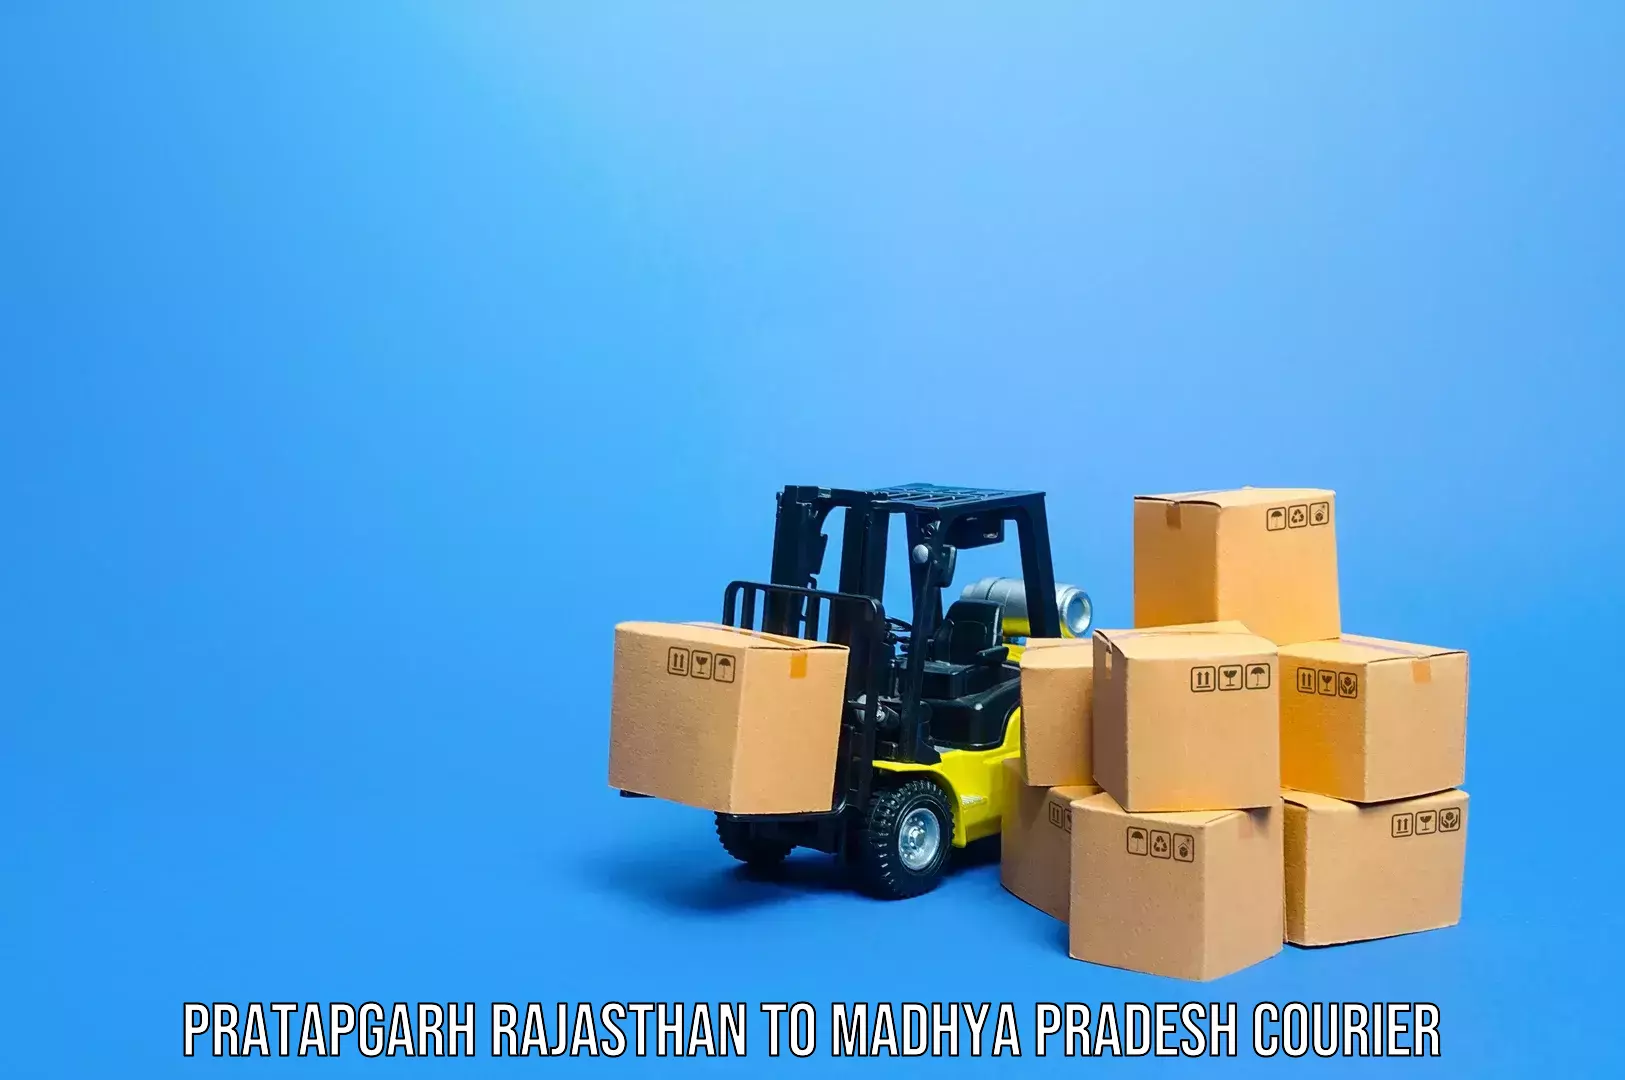 Luggage shipping specialists Pratapgarh Rajasthan to Niwari